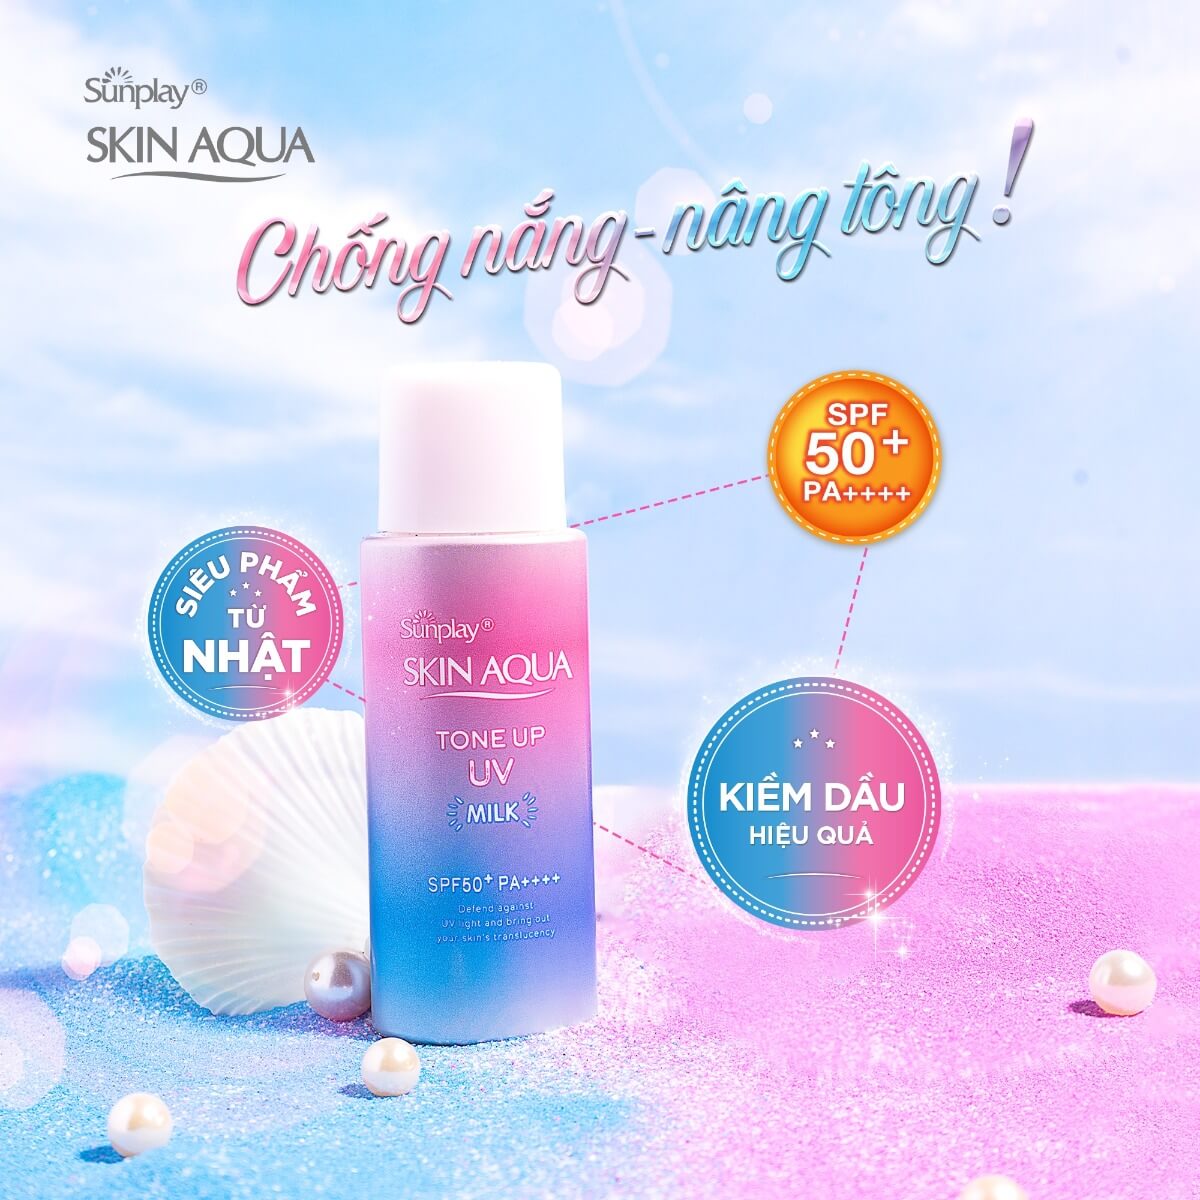 sua-chong-nang-sunplay-skin-aqua-hieu-chinh-sac-da-50g-1 (1)